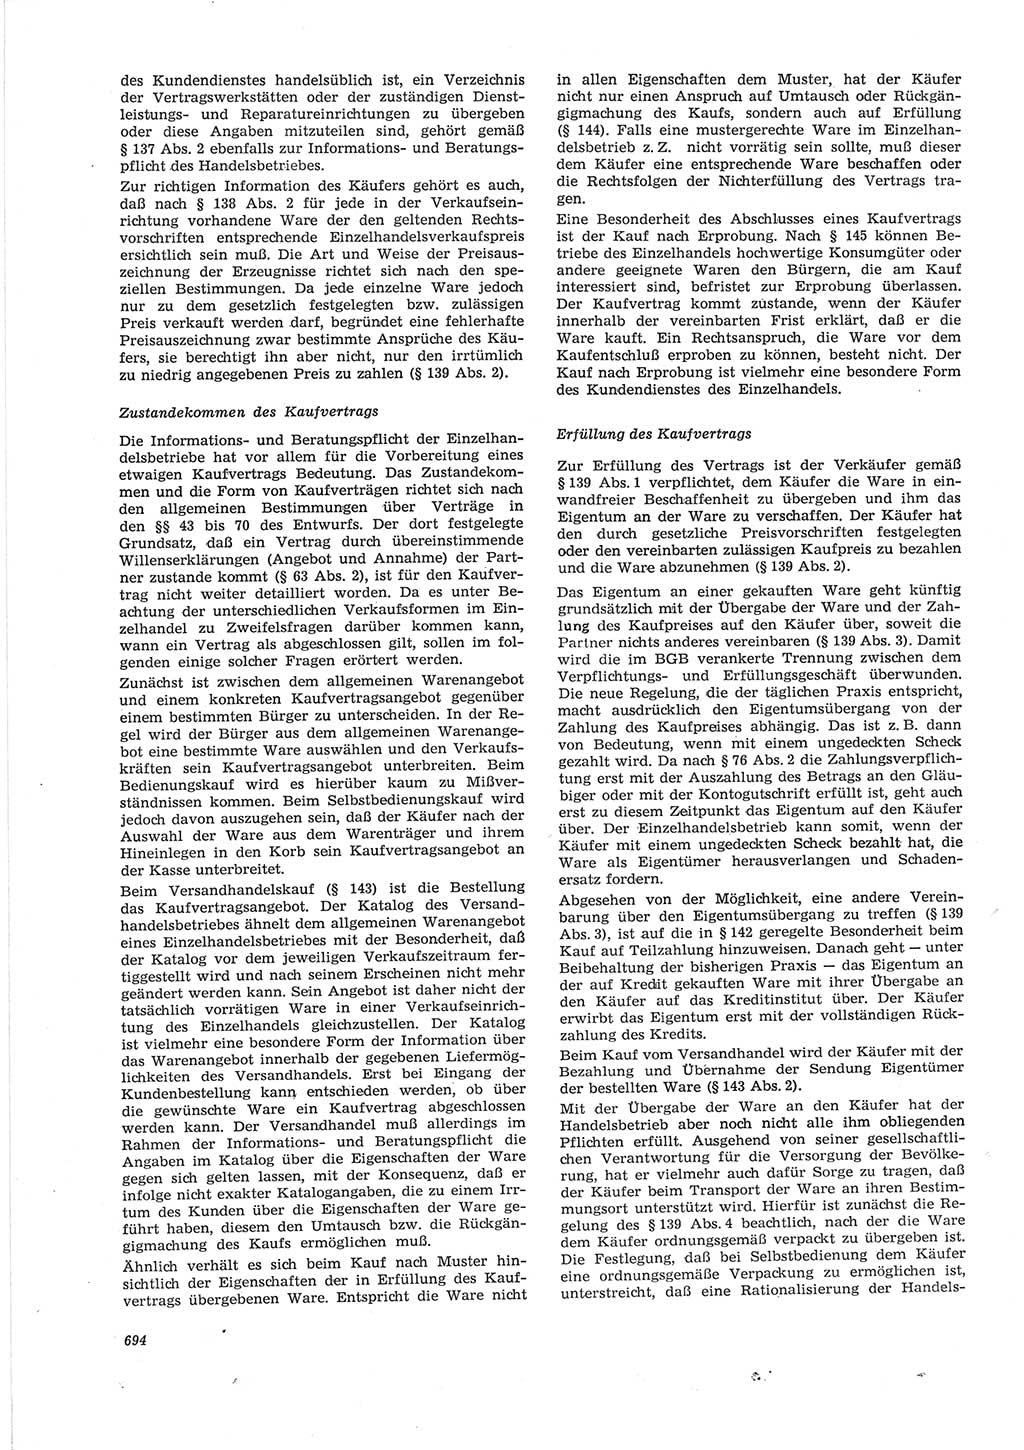 Neue Justiz (NJ), Zeitschrift für Recht und Rechtswissenschaft [Deutsche Demokratische Republik (DDR)], 28. Jahrgang 1974, Seite 694 (NJ DDR 1974, S. 694)